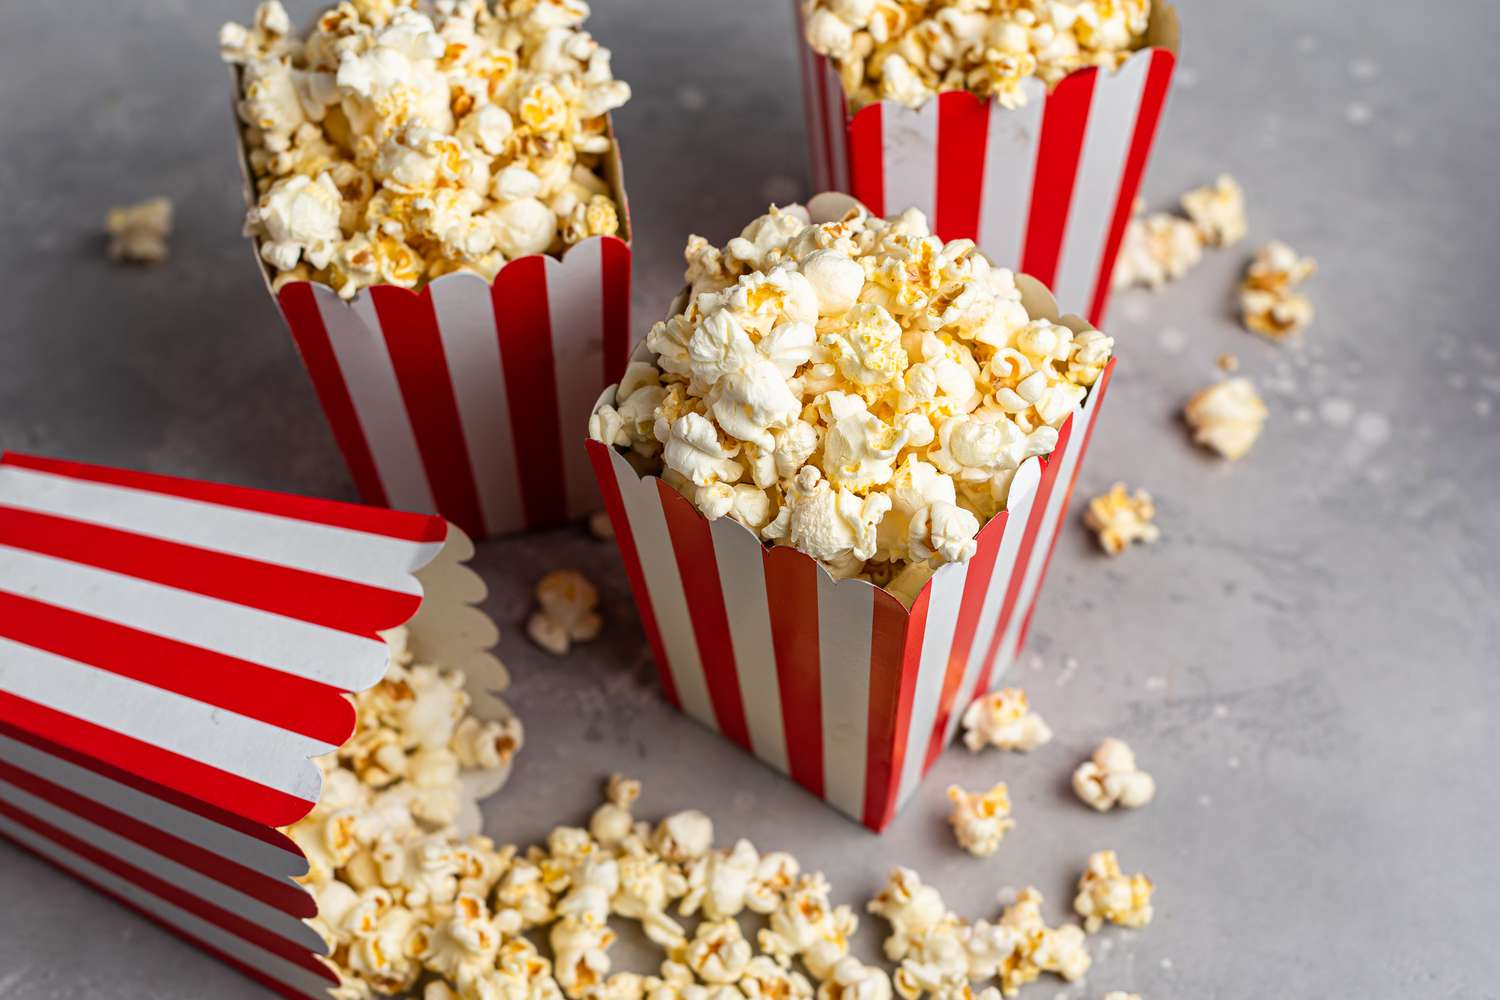 Is popcorn gezond